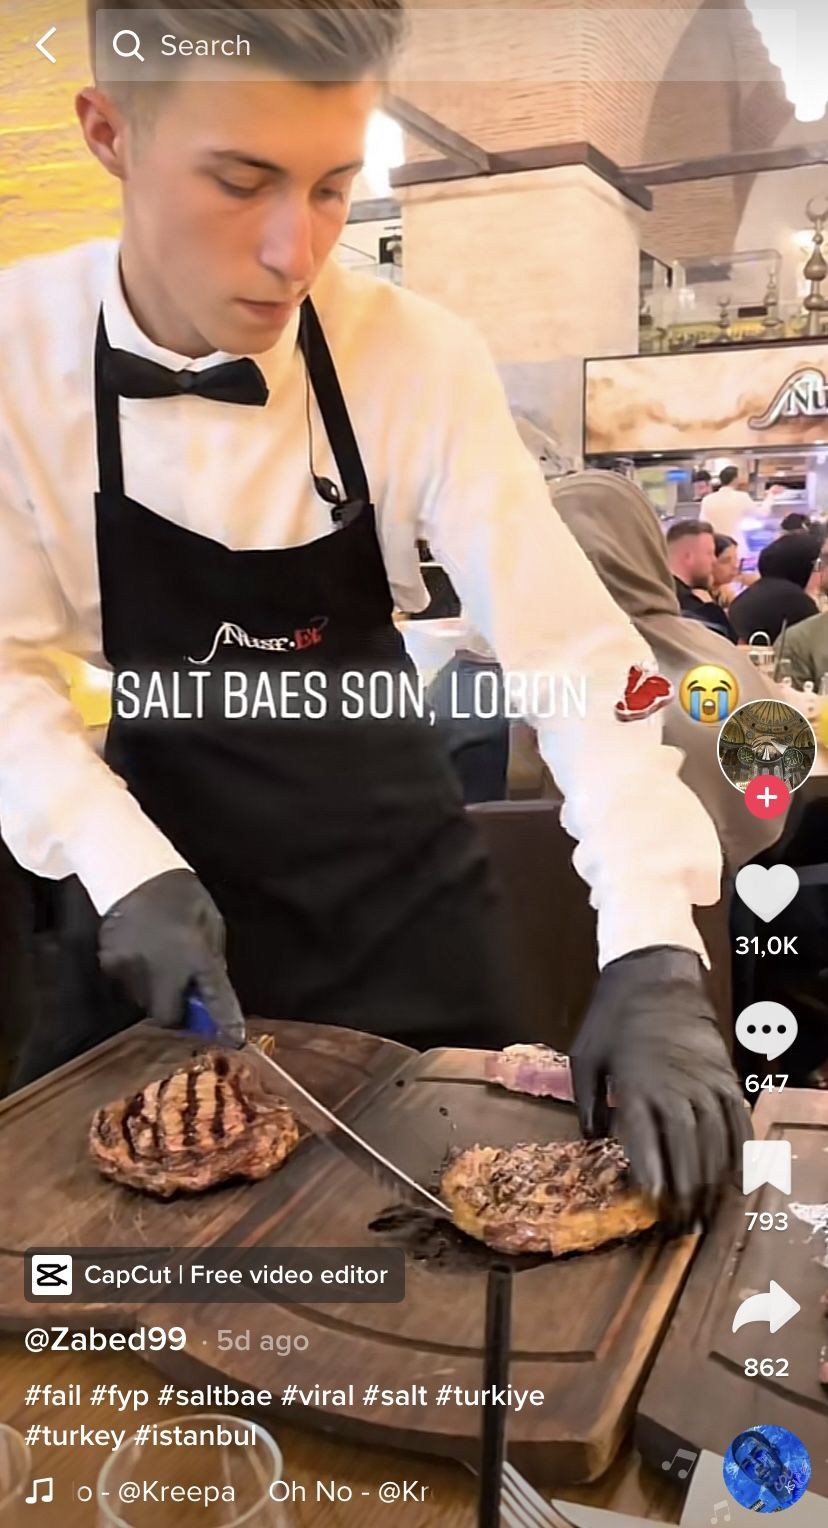 Chef di restoran Salt Bae jatuhkan steak mahal ke lantai